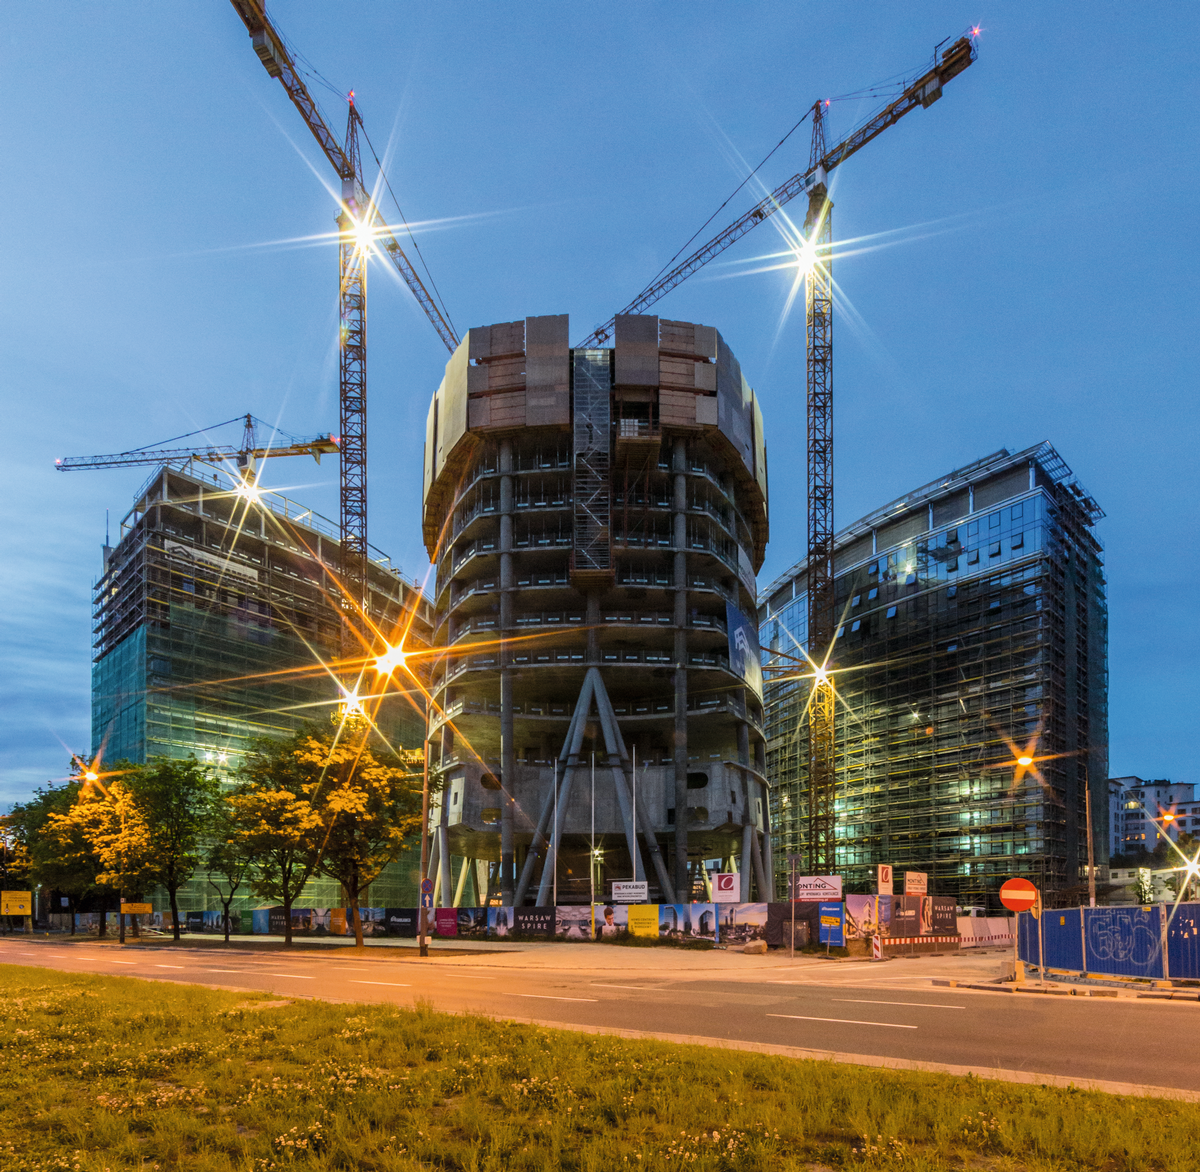 Mediendatei Nr. 227915 Warsaw Spire: Drei Bauwerke bilden den neuen Gebäudekomplex in der polnischen Hauptstadt. Die Geschosse des 220 m hohen, taillierten Büroturms haben einen elliptischen Grundriss, der sich von Etage zu Etage verändert